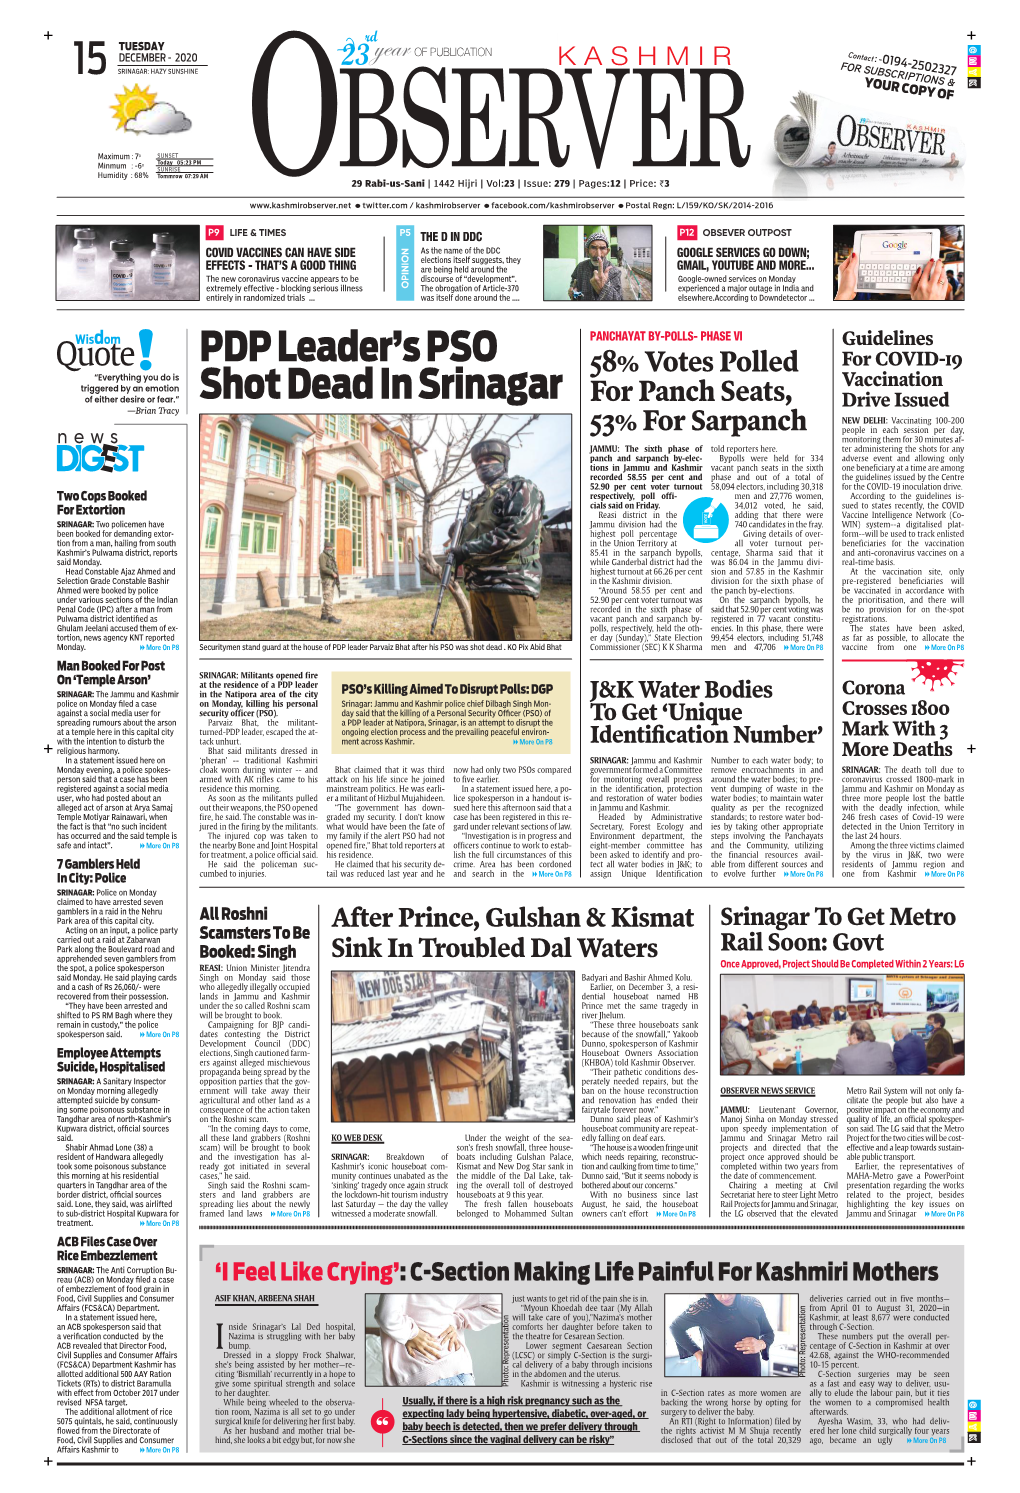 Pdp Leader's Pso Shot Dead in Srinagar